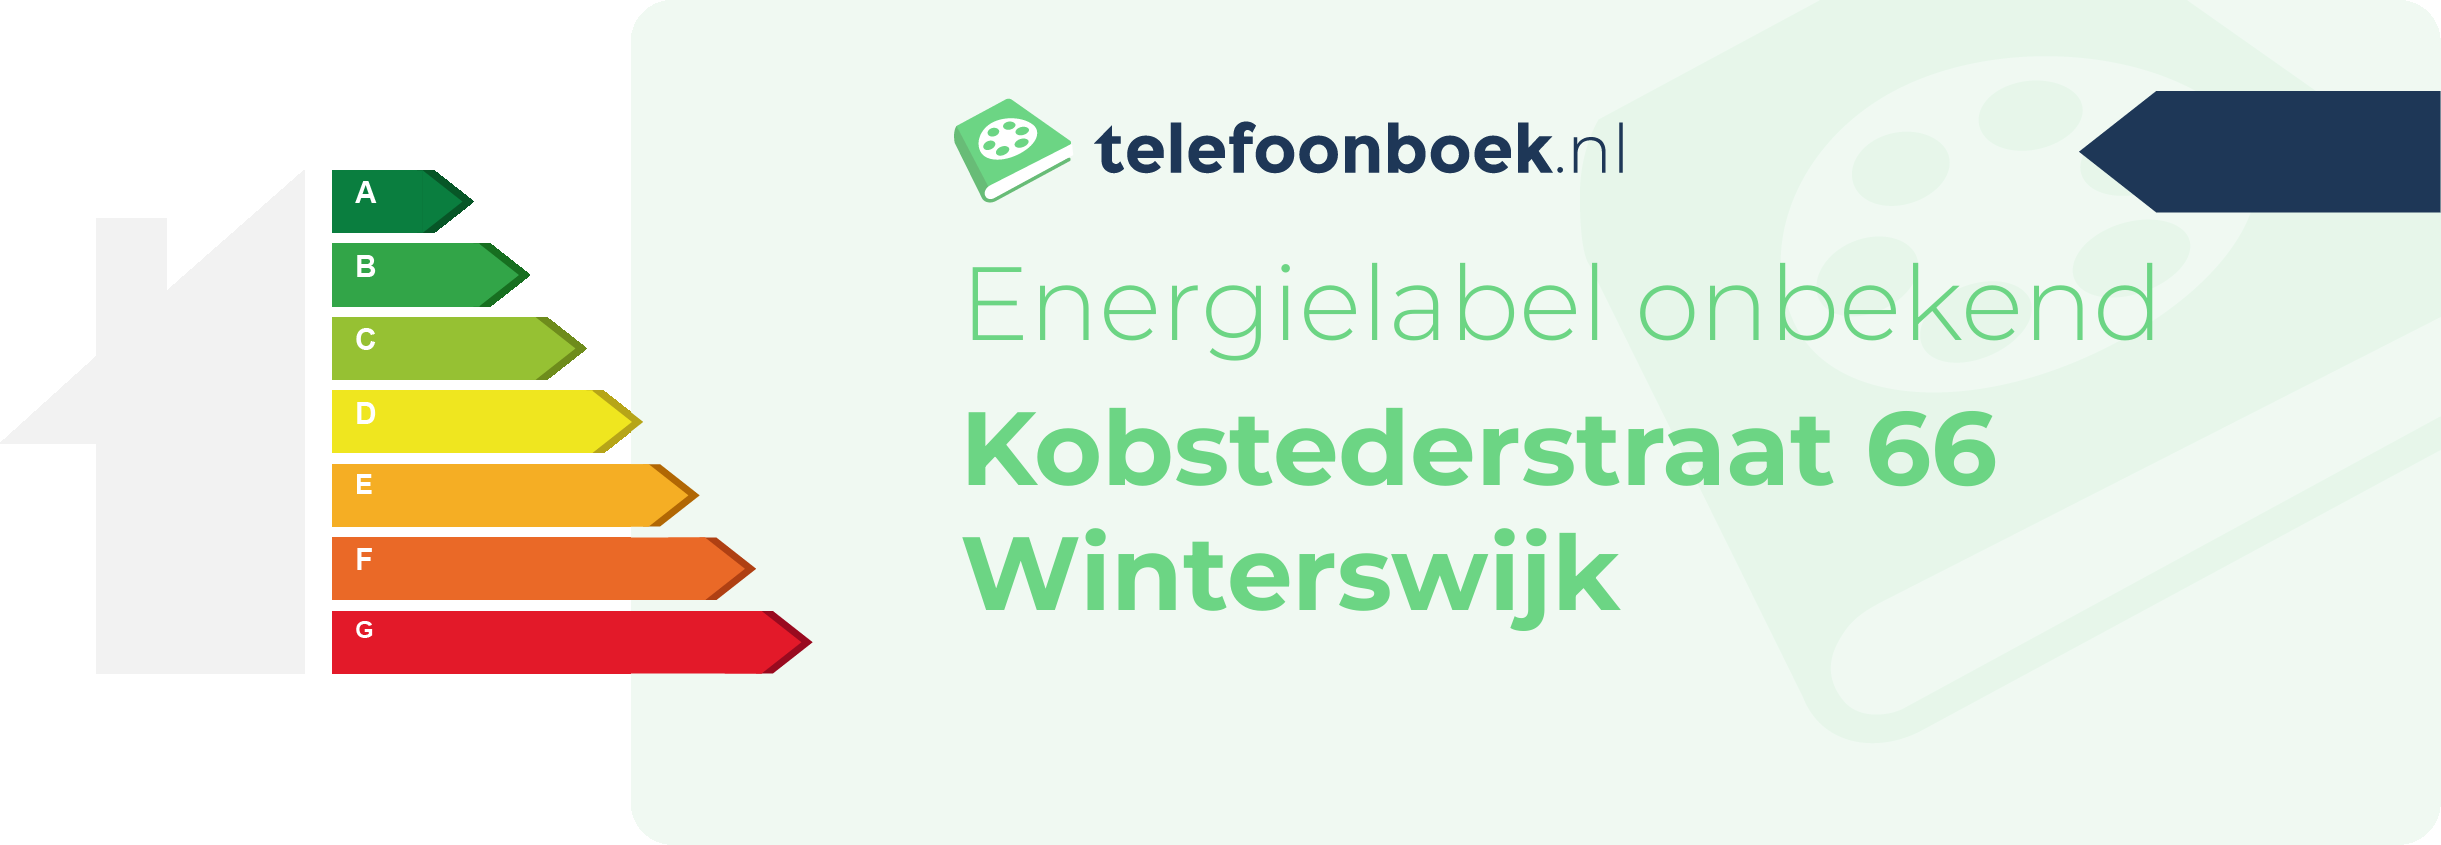 Energielabel Kobstederstraat 66 Winterswijk